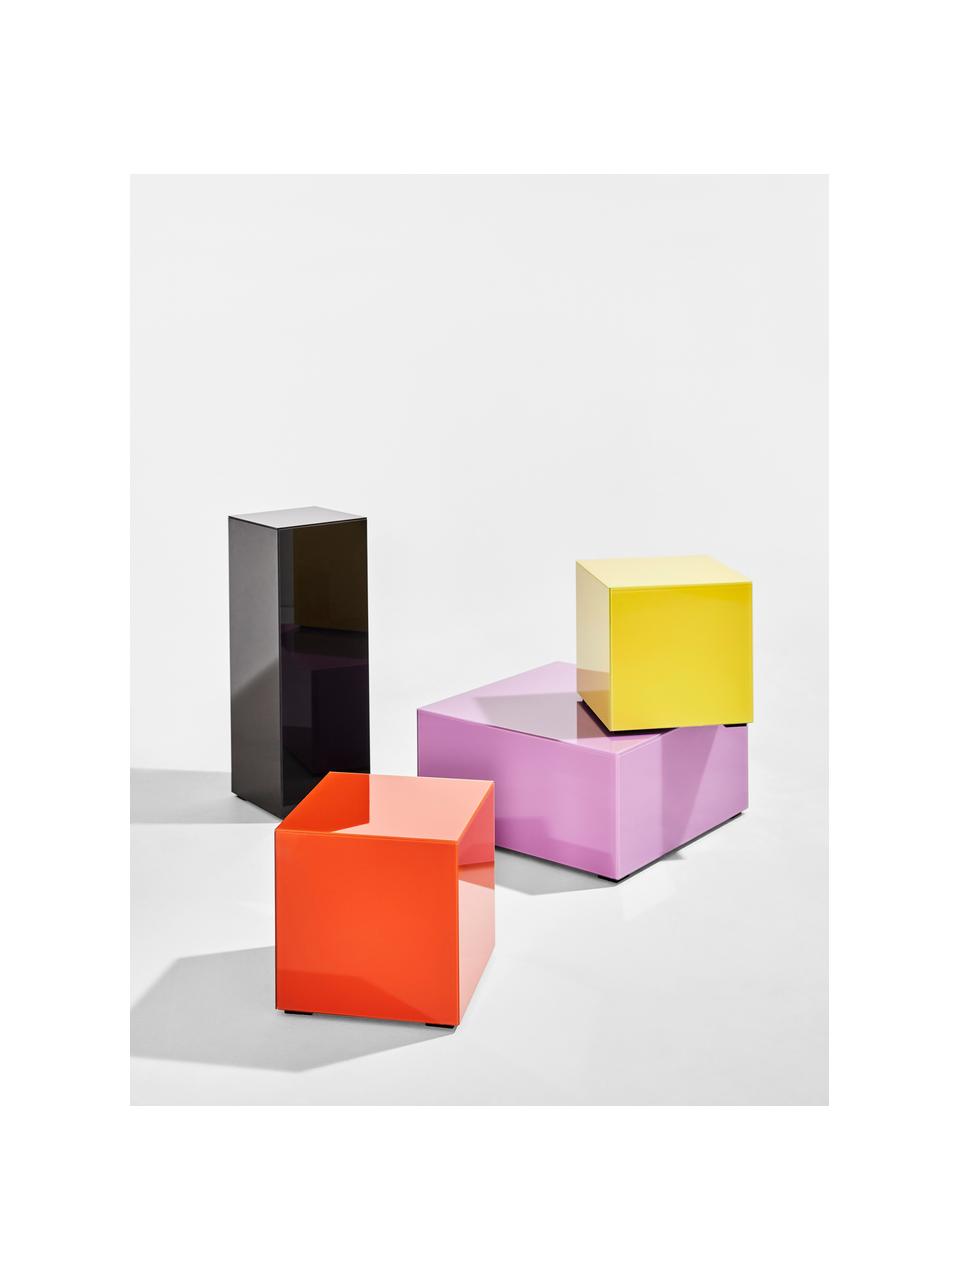 Dekosäule Pop in Schwarz mit Spiegel-Effekt, Mitteldichte Holzfaserplatte (MDF), Glas, gefärbt, Schwarz, B 27 x H 75 cm